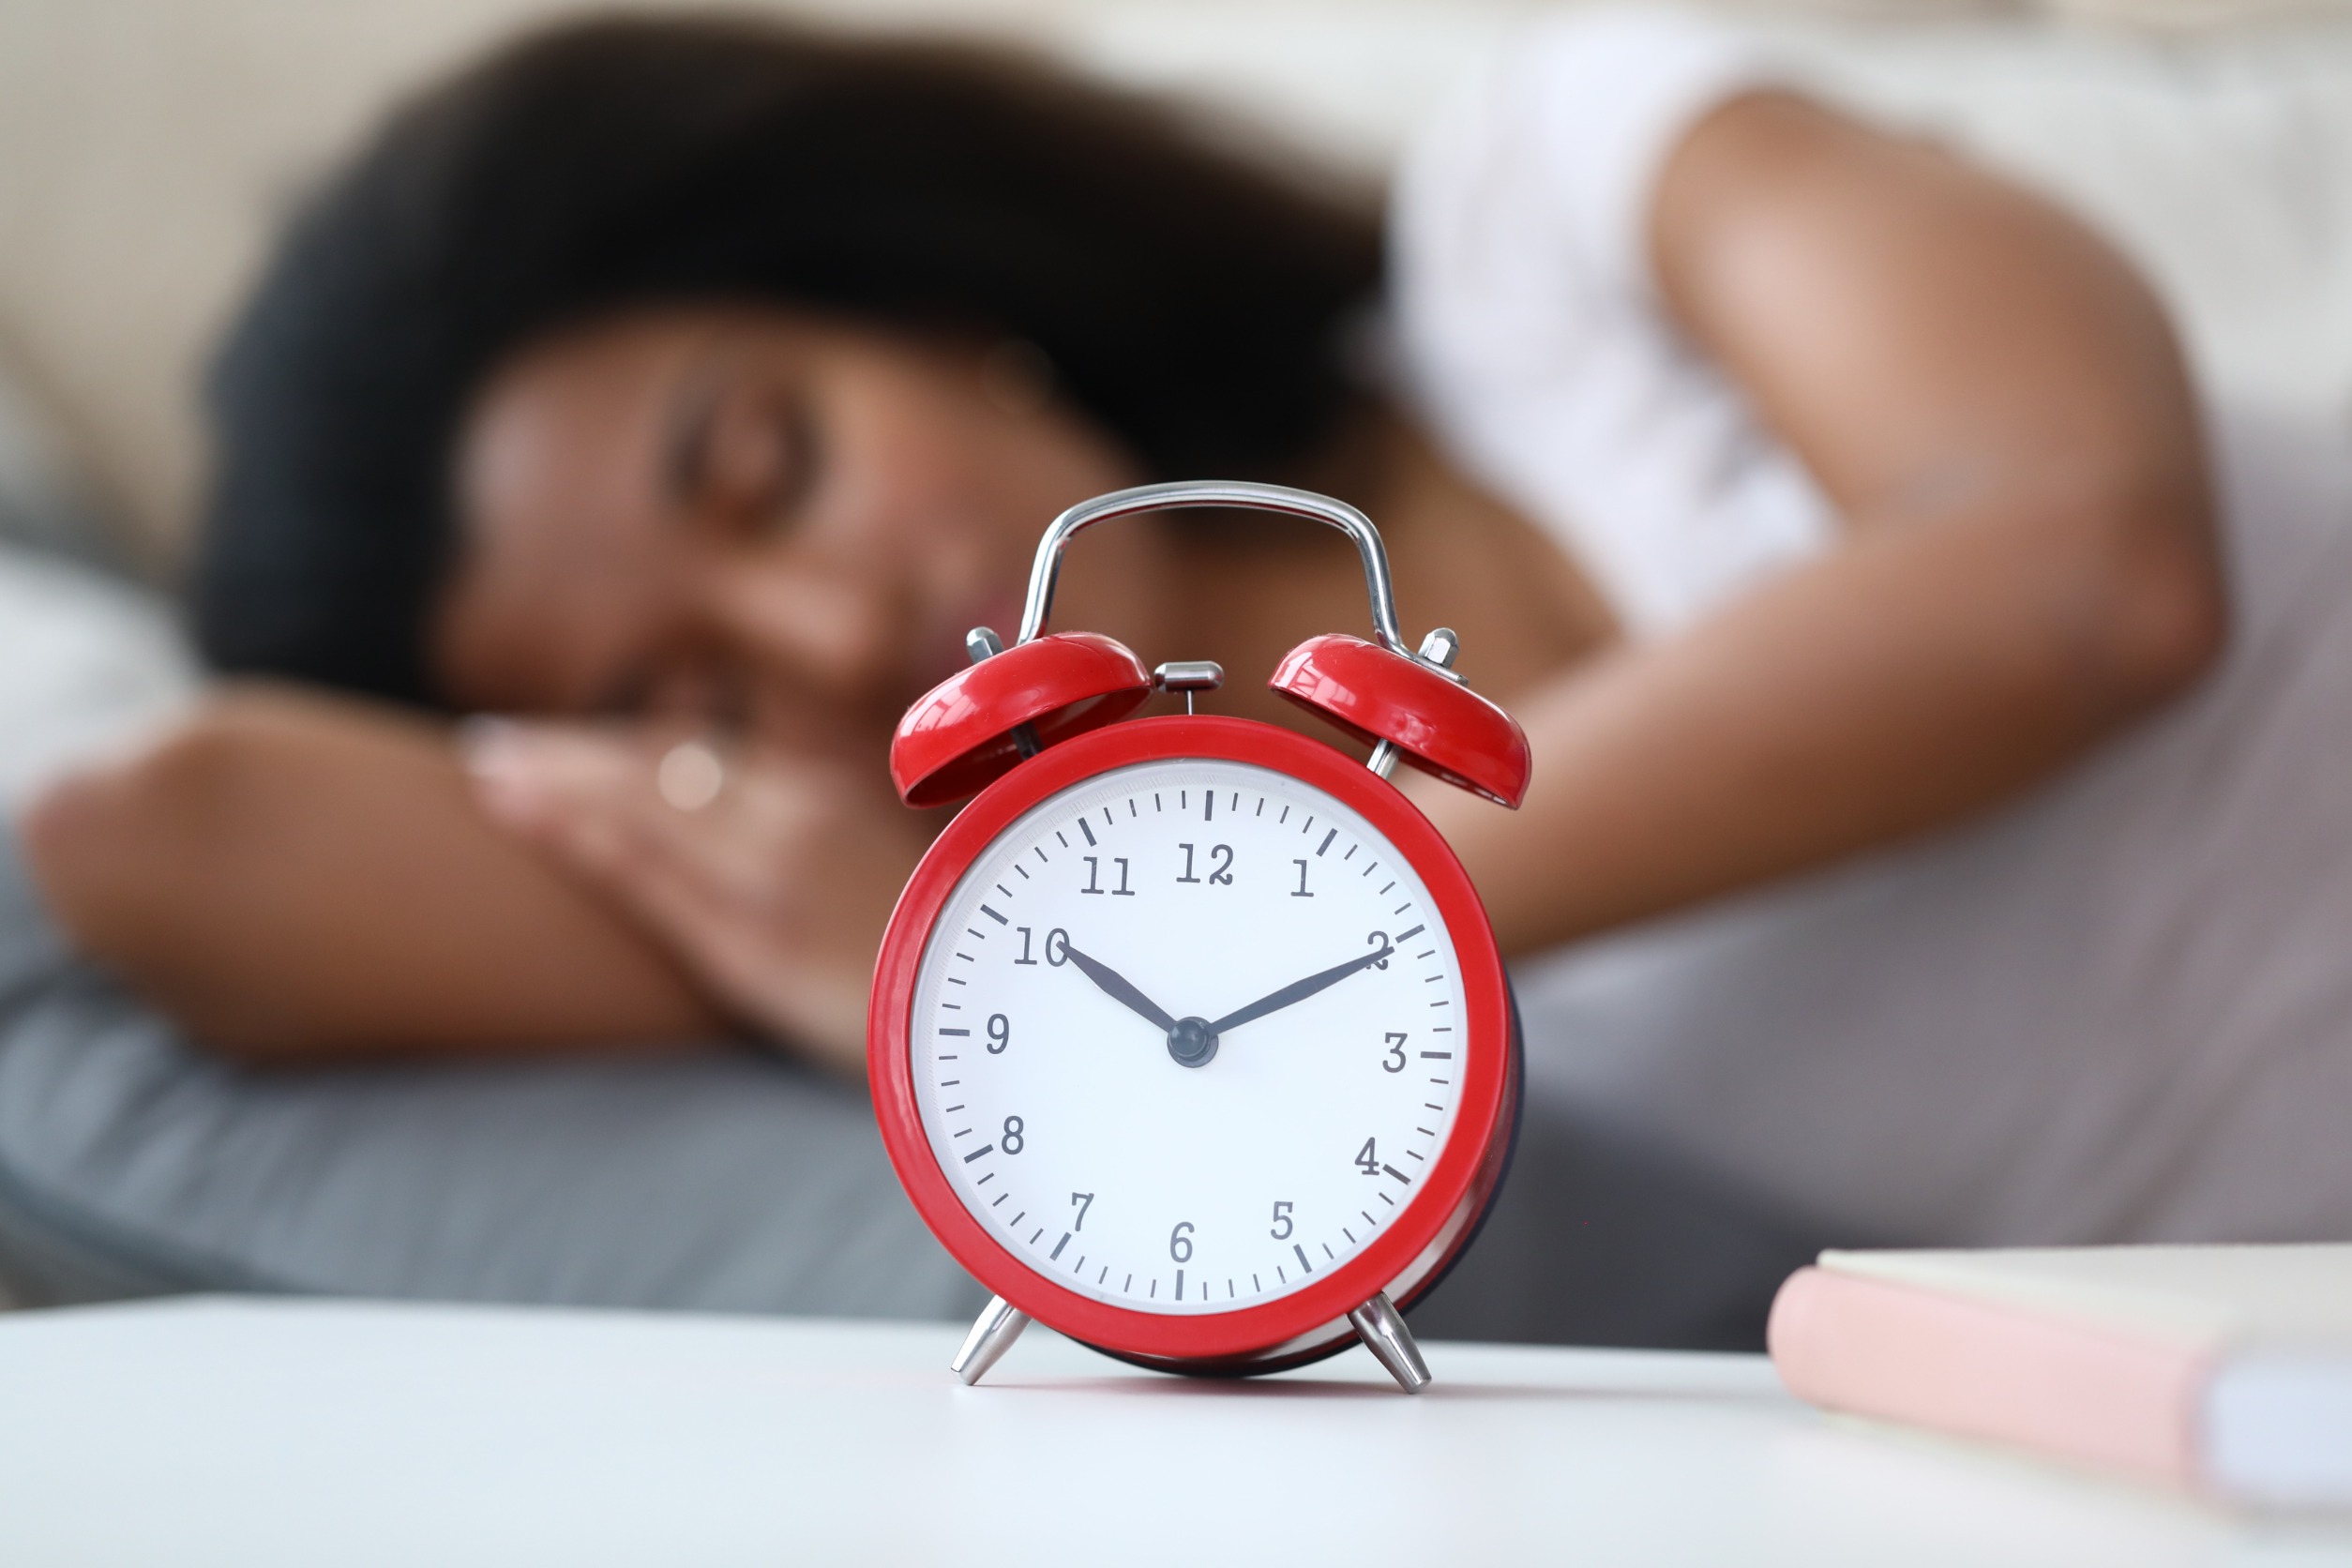 Adopt Good Sleep Habits